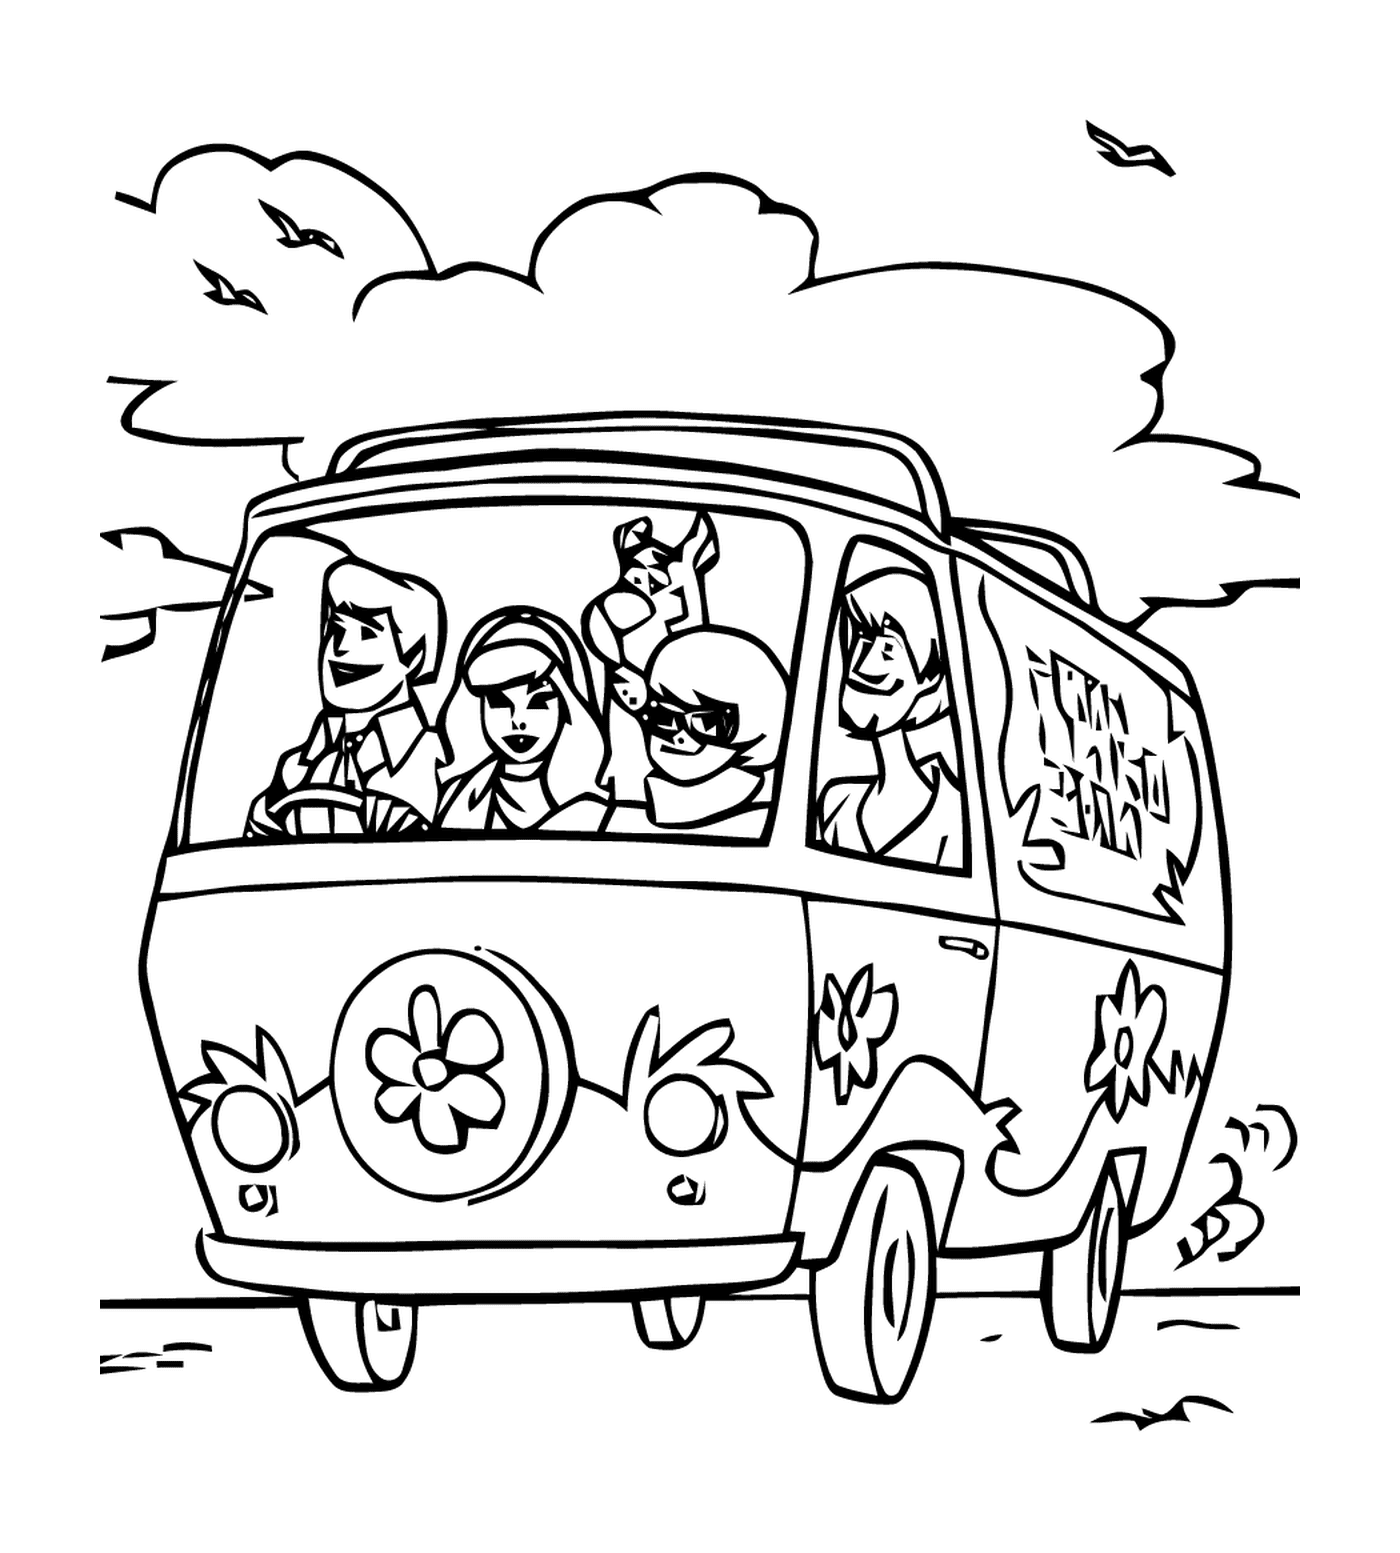  مجموعة من الناس في سيارة على الطريق 